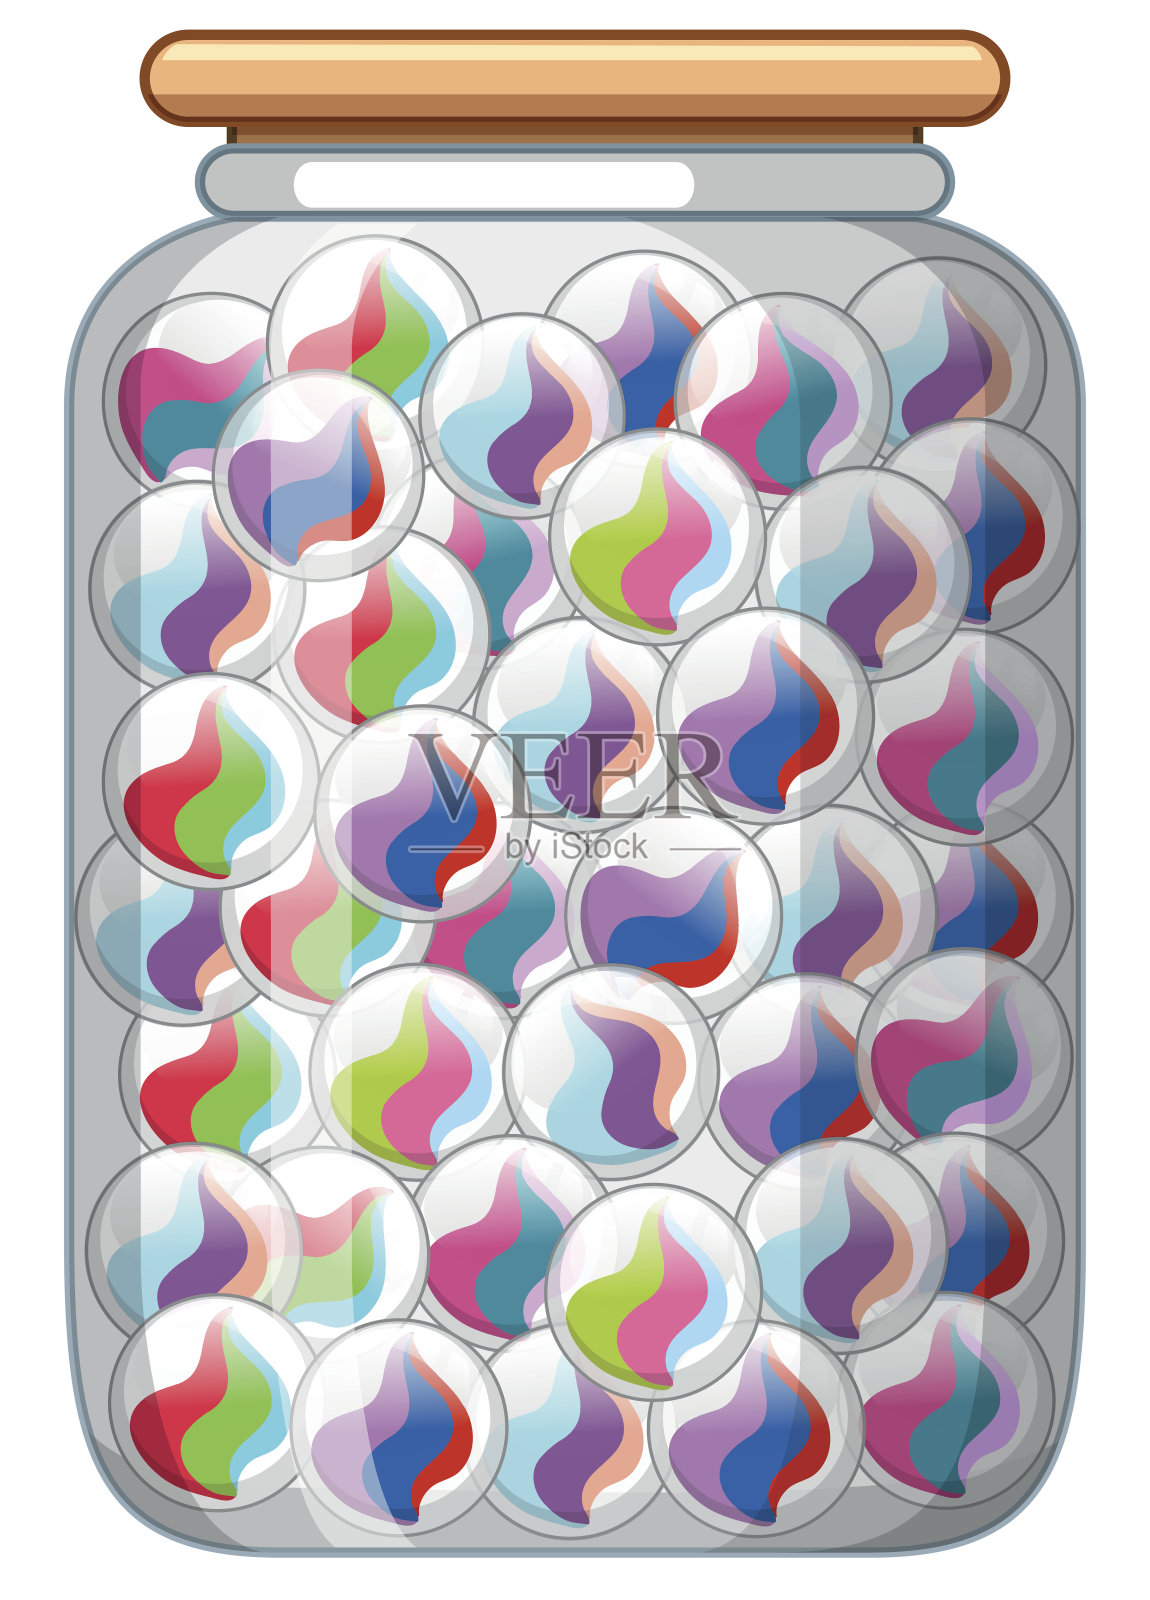 玻璃罐中五颜六色的弹珠插画图片素材